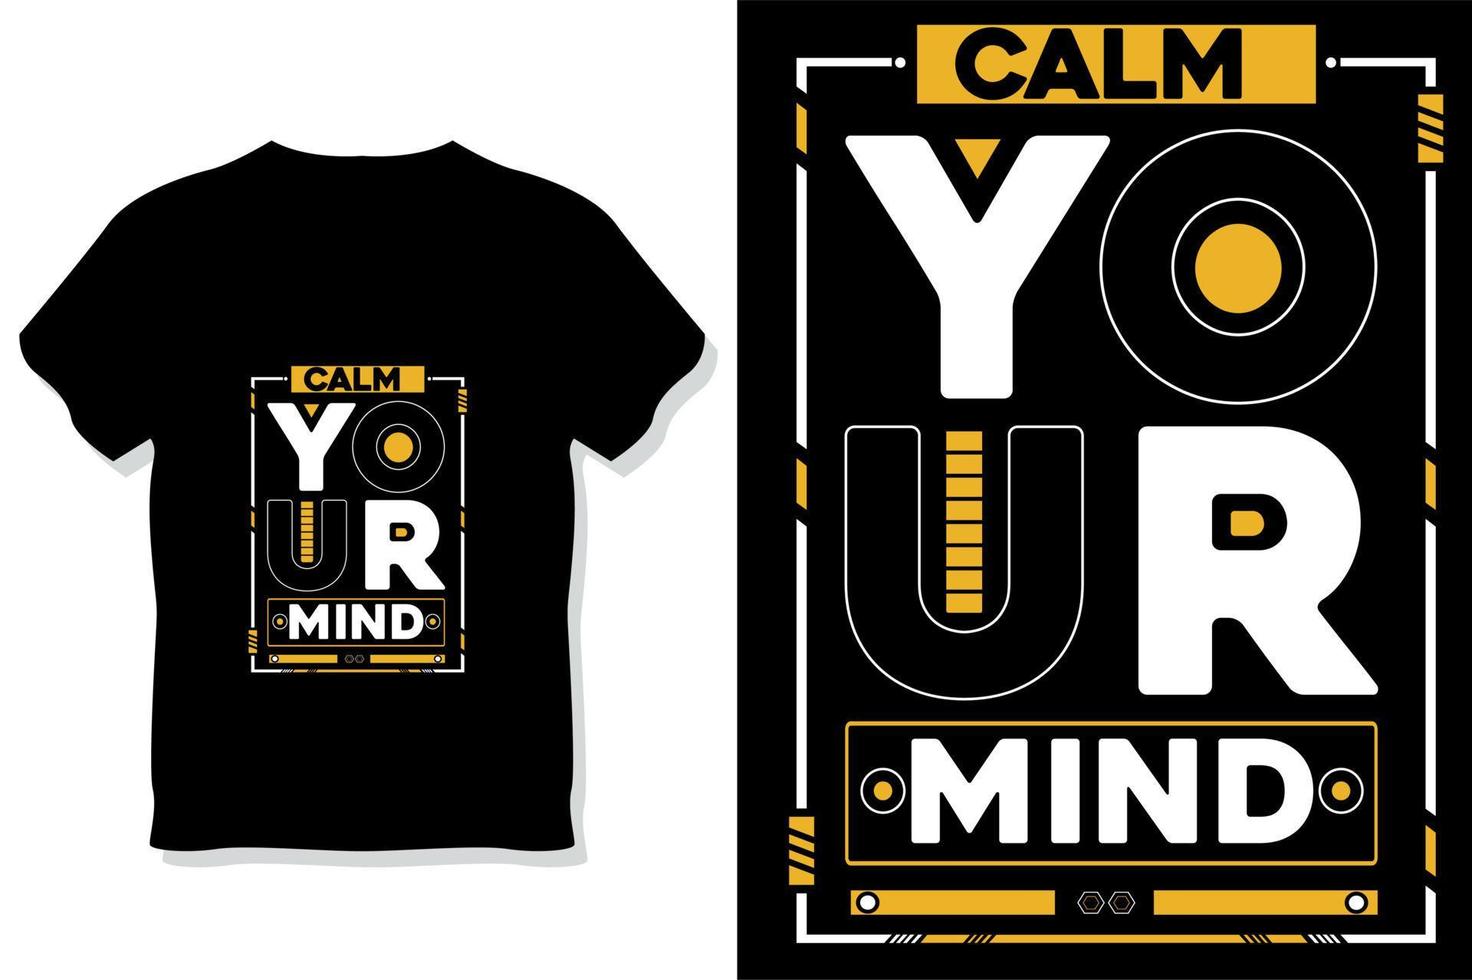 acalme sua mente design de camiseta com citações motivacionais modernas vetor